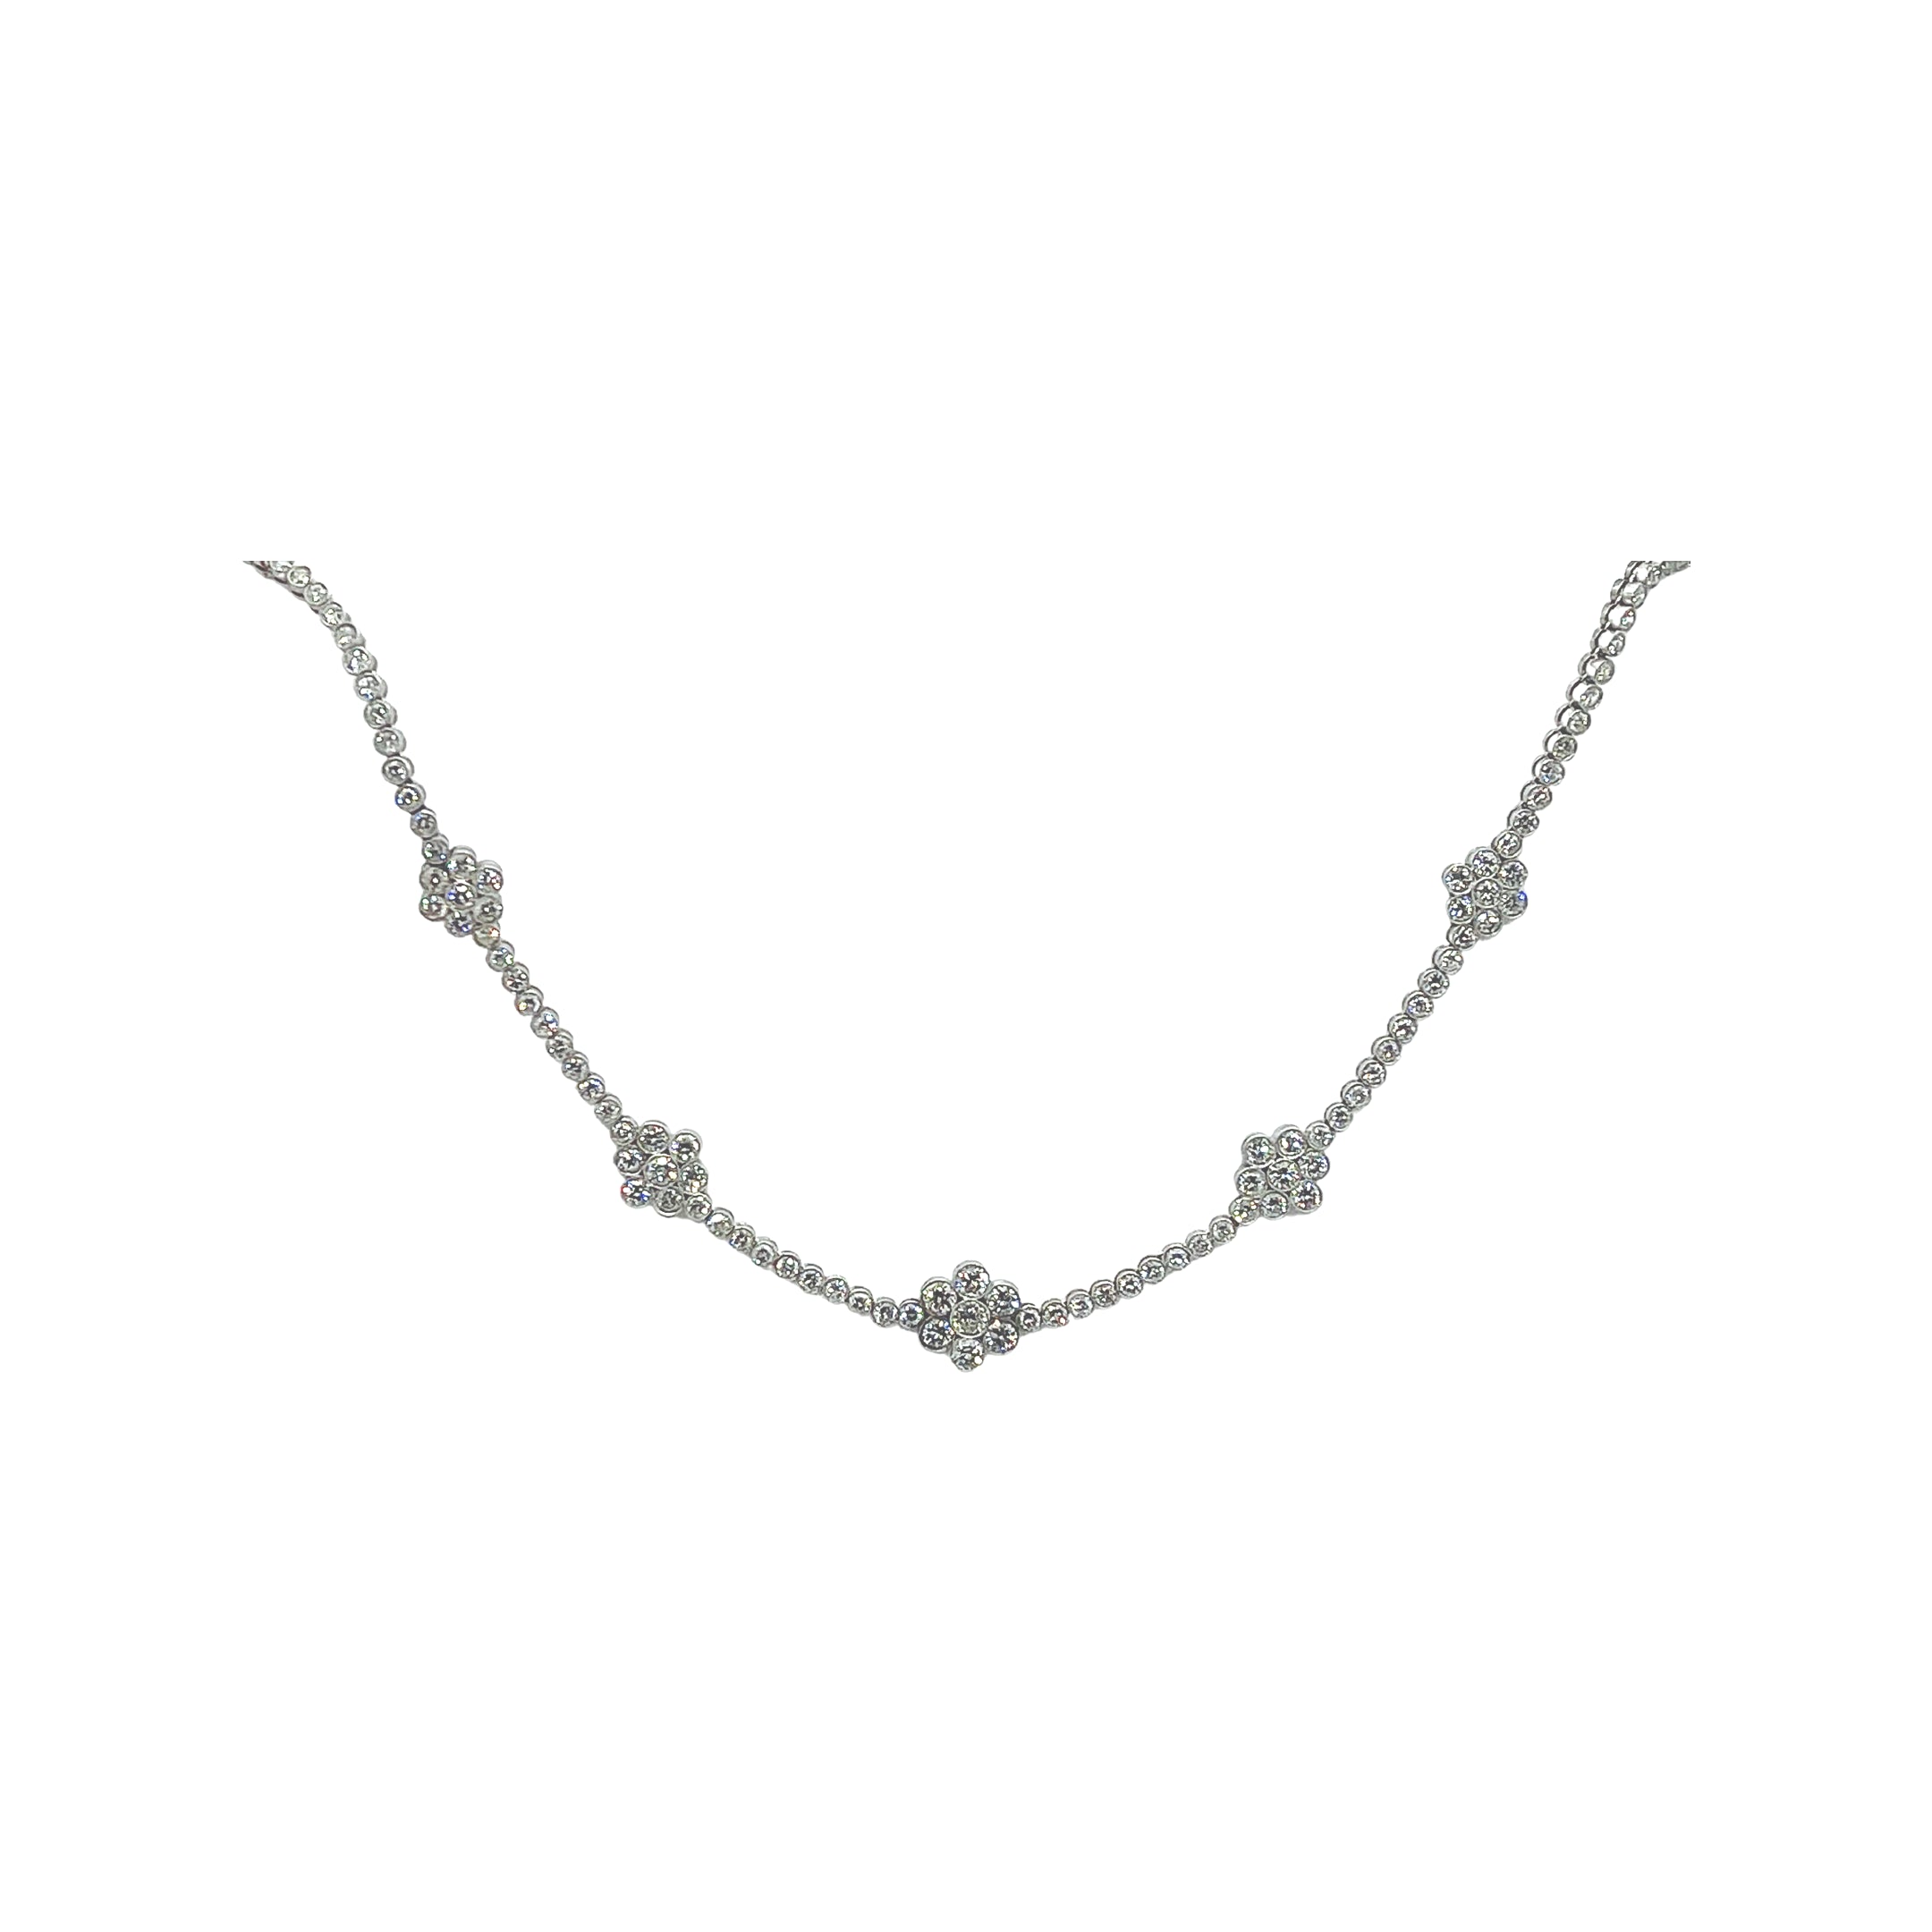 Antique Floral Diamond Necklace